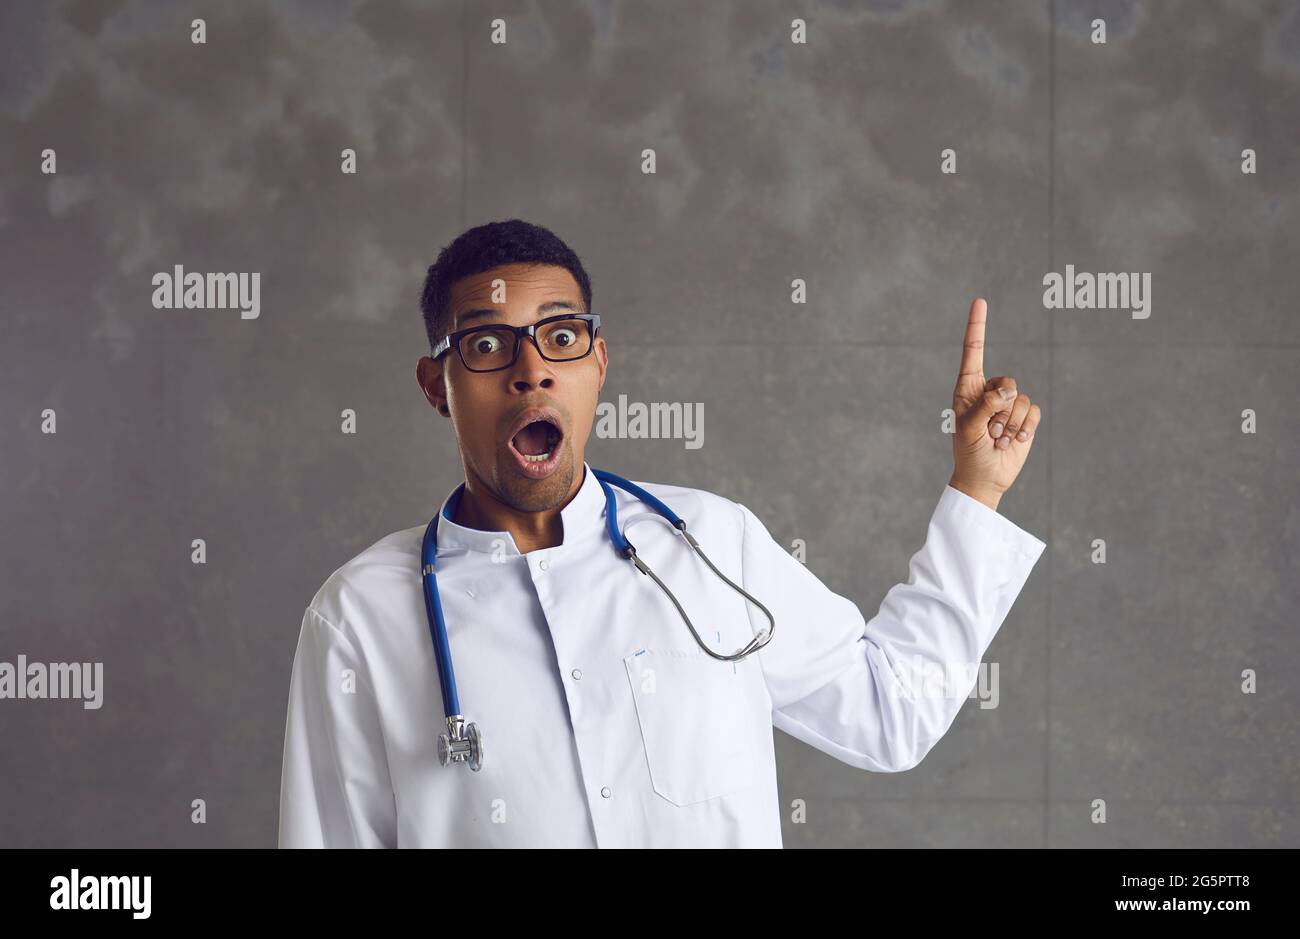 Un médecin américain afro-américain choqué pointe vers le haut le portrait du studio Banque D'Images